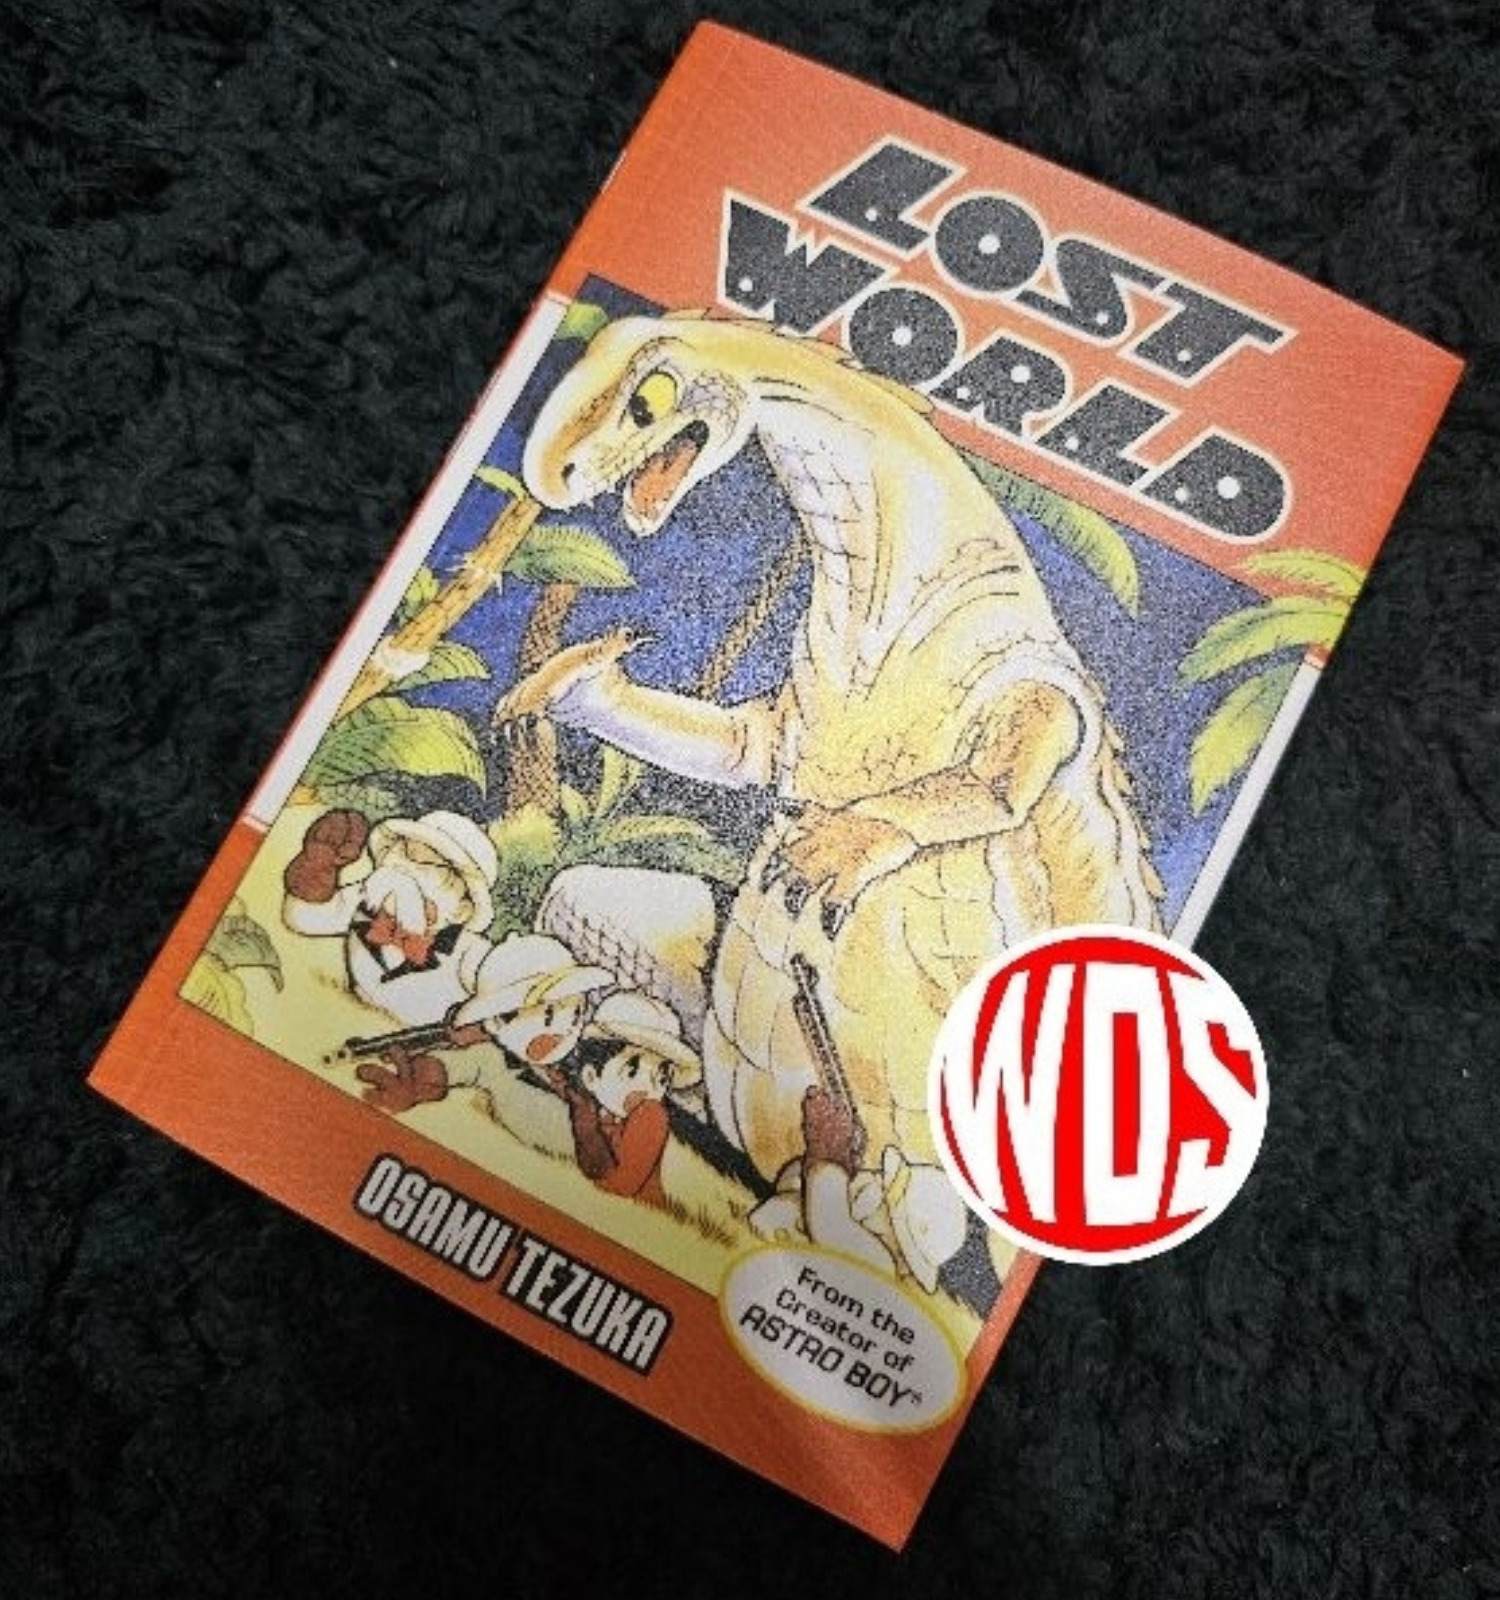 New Lost World One Shot Manga by Osamu Tezuka English Version Comic